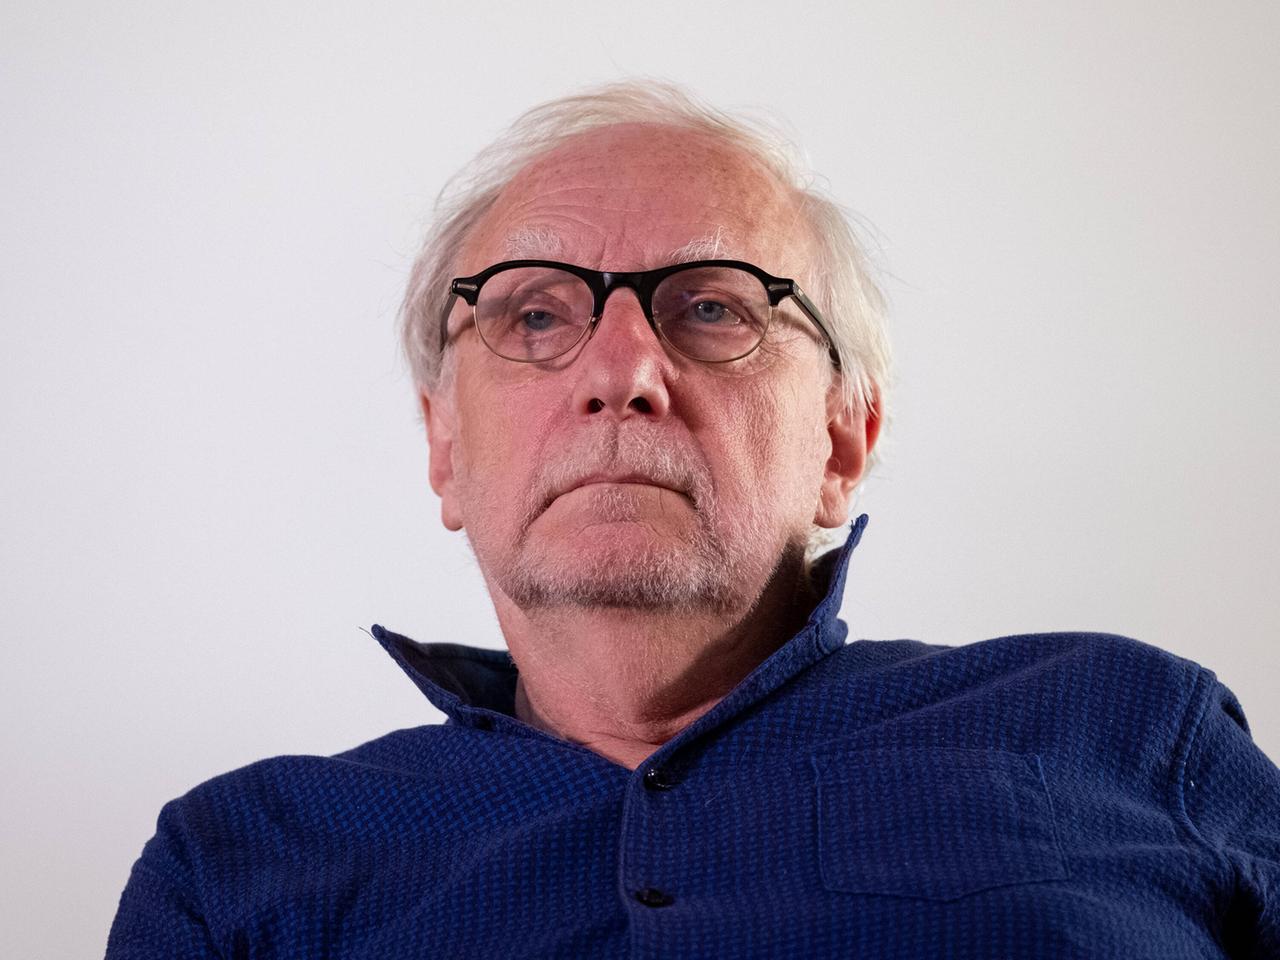 Porträt eines Mannes mit kurzen Haaren und Brille, es ist der Politikwissenschaftler Claus Leggewie. 